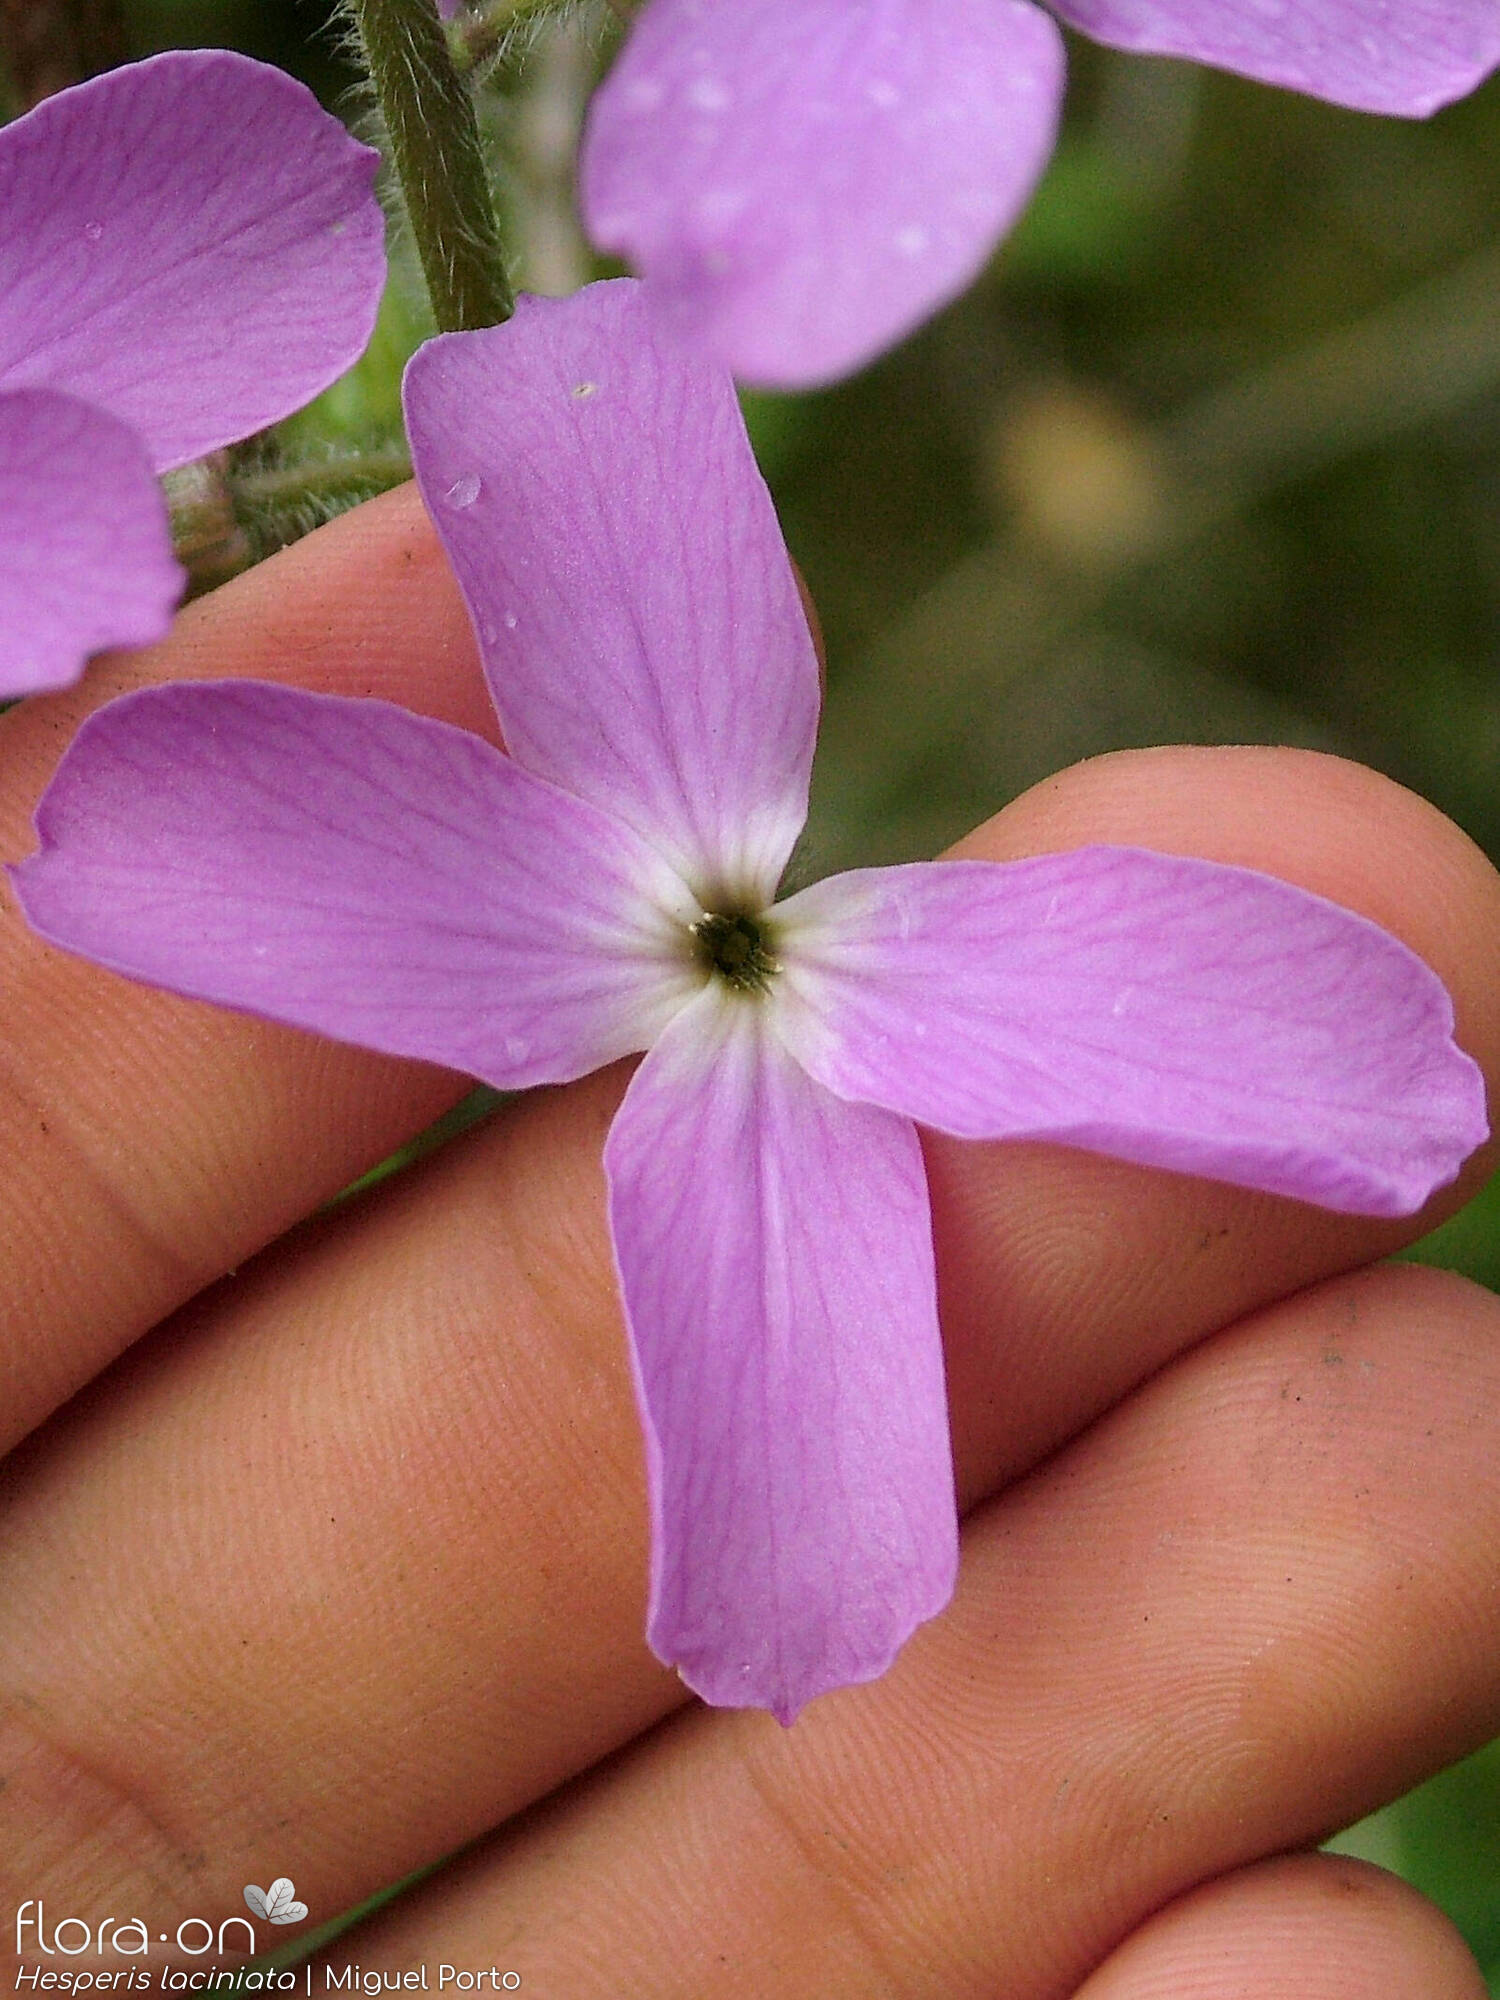 Hesperis laciniata - Flor (close-up) | Miguel Porto; CC BY-NC 4.0